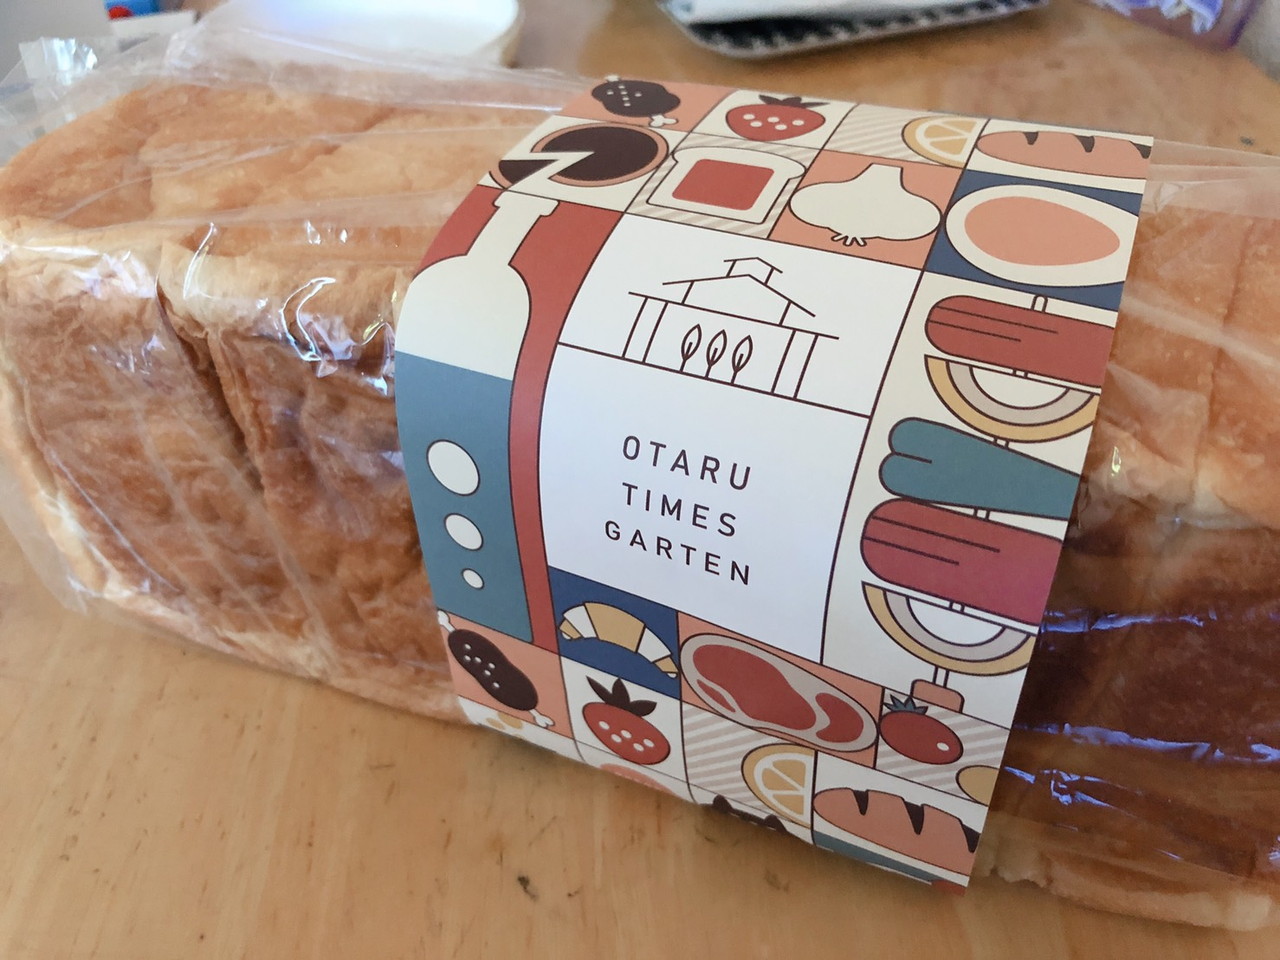 お土産に買った「パンたいむ」の食パン